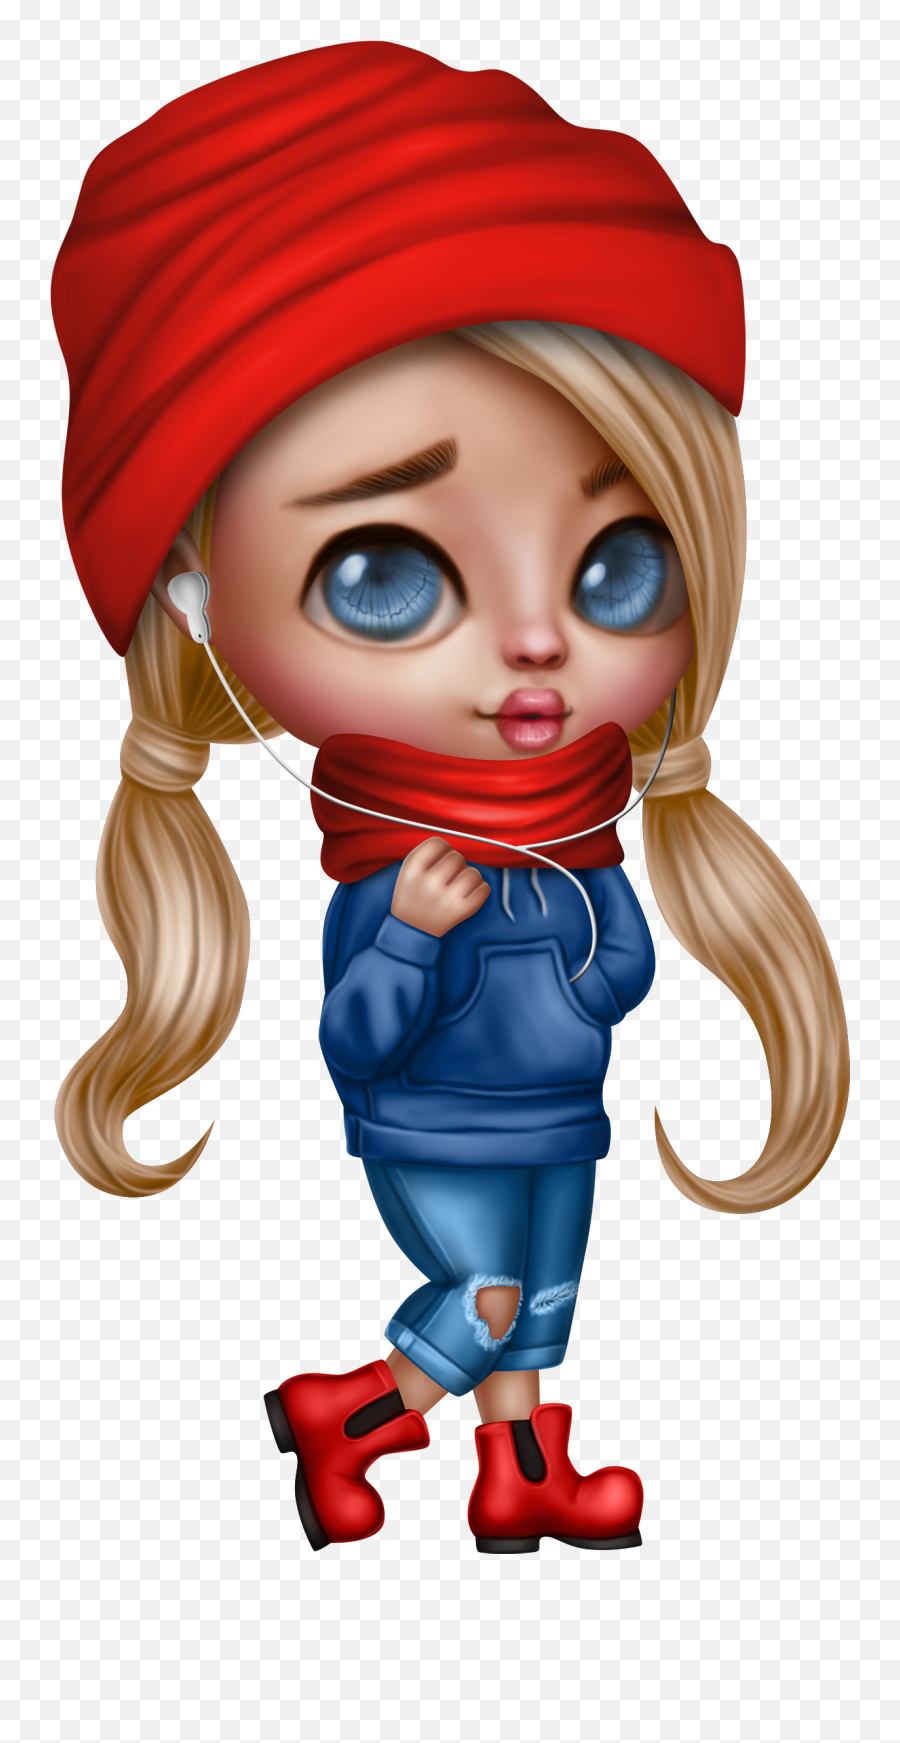 Cartoon Clip Art Big Eyes Artist - Bubble Gum Cartoon Doll Emoji,How To Draw A Chibi Skull Emoticon In Photoshop